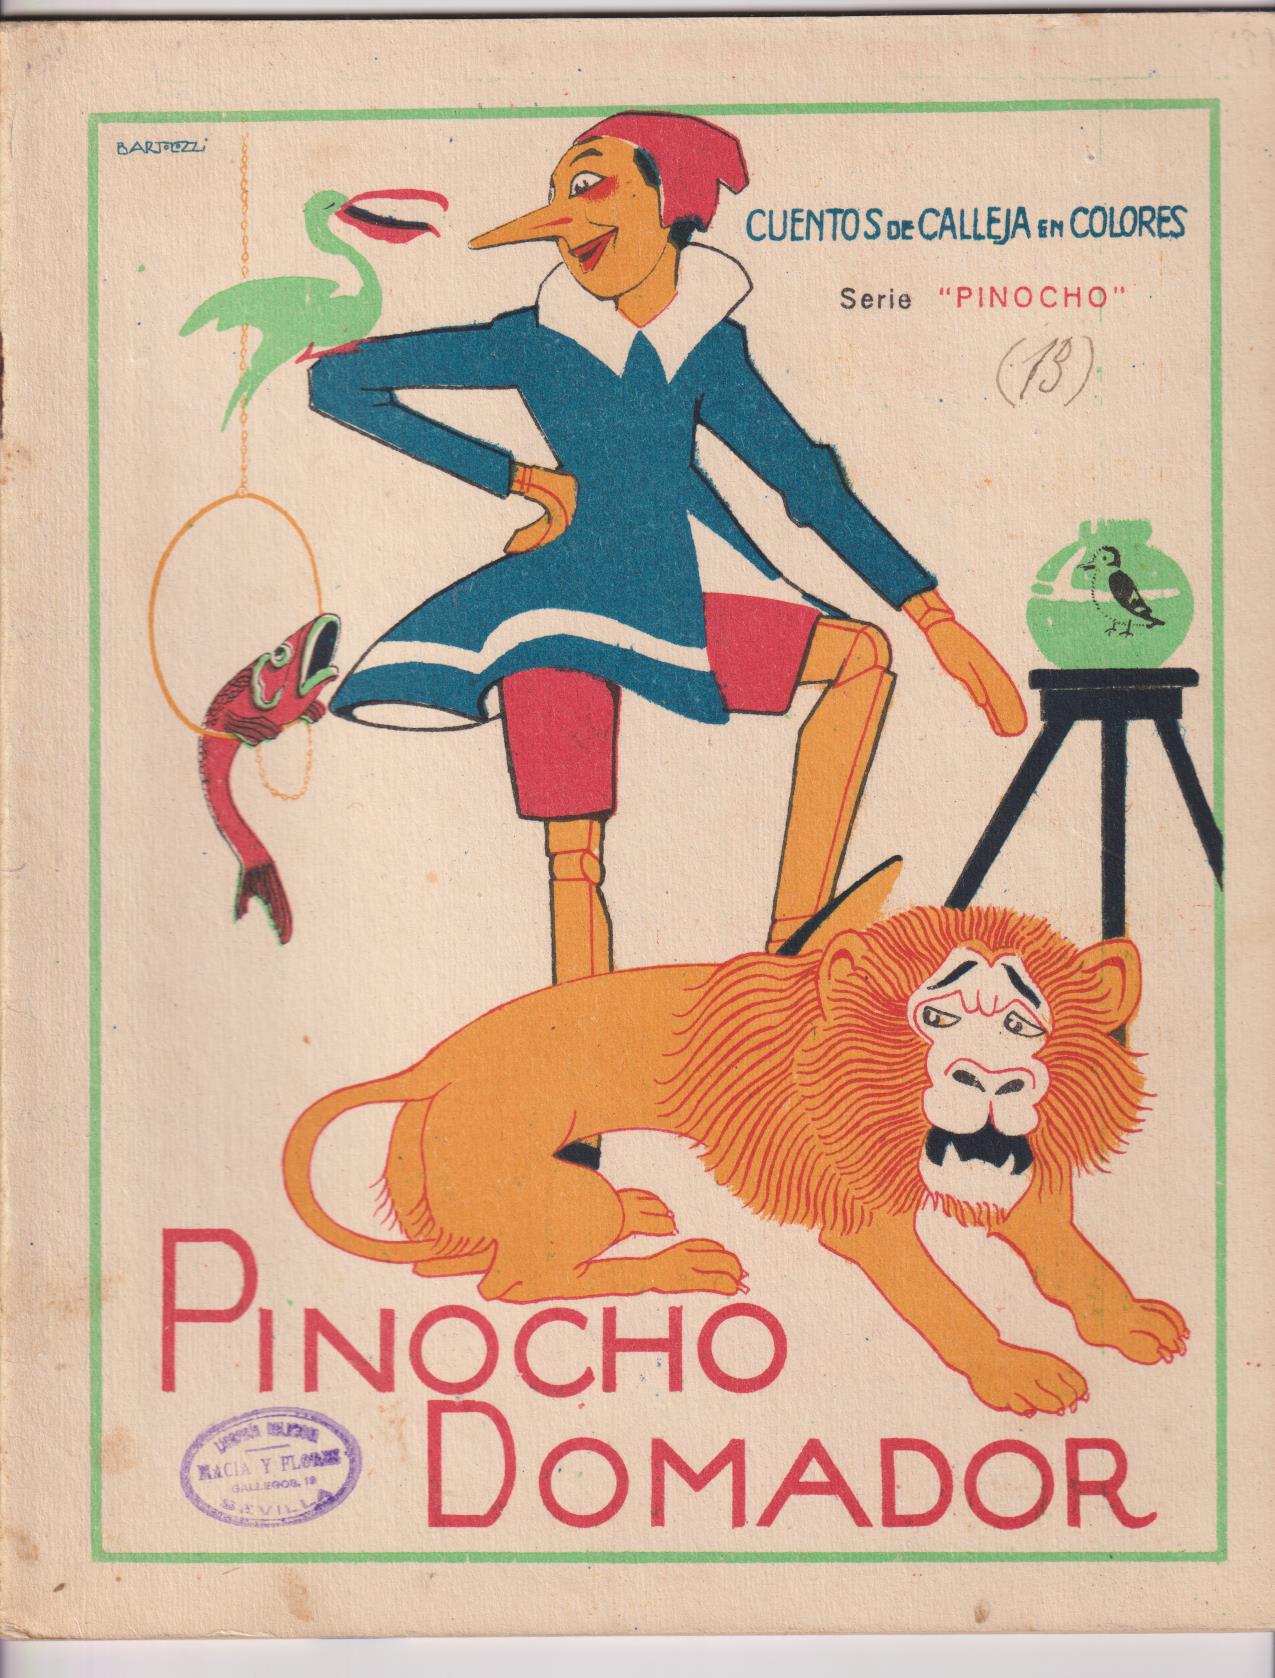 Pinoch0 nº 13. Pinocho Domador. Calleja 1919. (28x22).16 páginas con abundantes ilustraciones color